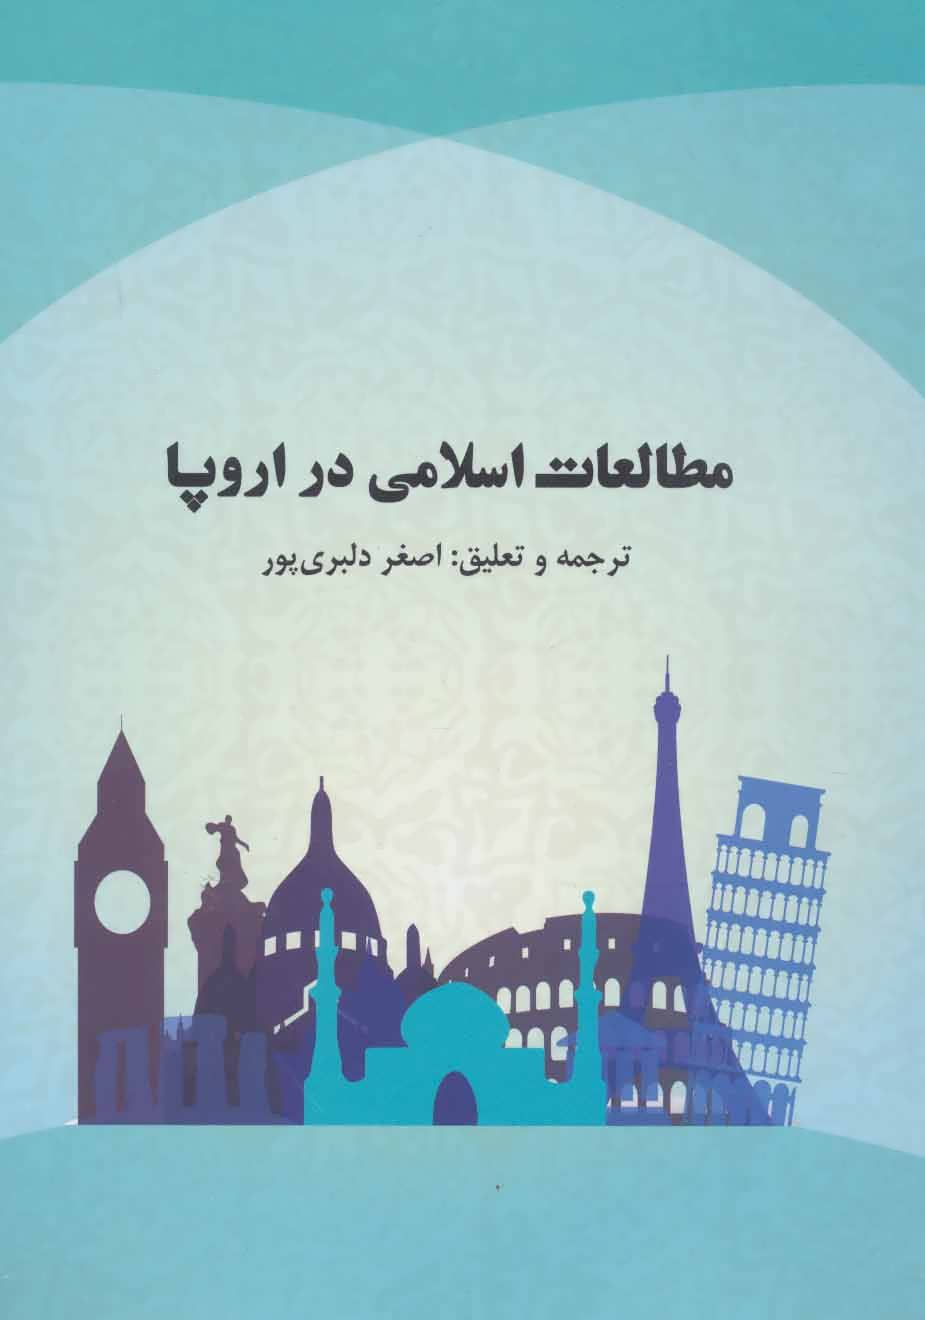 کتاب مطالعات اسلامی در اروپا